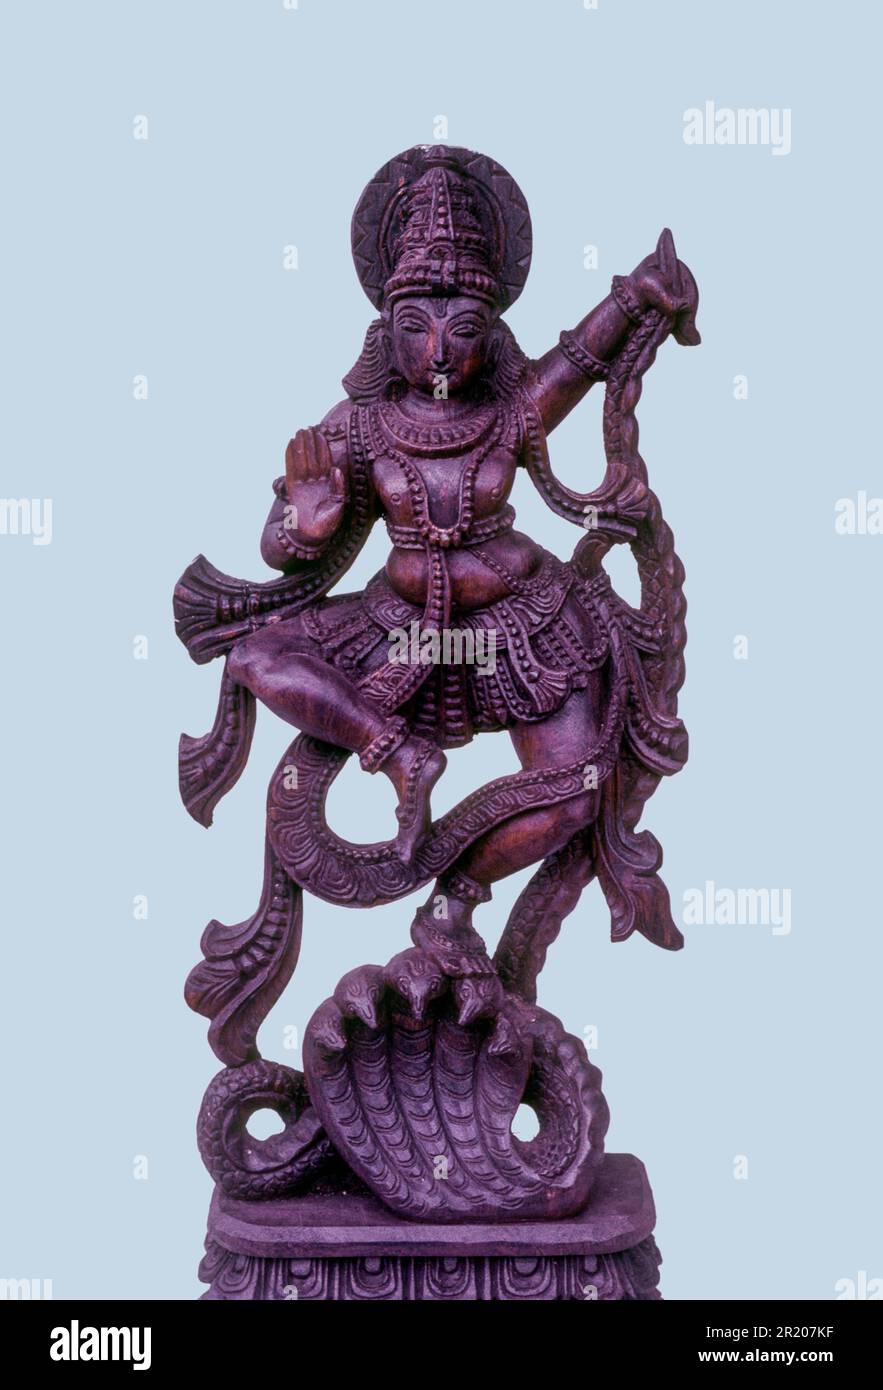 Découpe, Krishna danse sur Kaliya le serpent, sculptures en bois à Thambampatti près de Salem, Tamil Nadu, Inde du Sud, Inde, Asie. Artisanat Banque D'Images